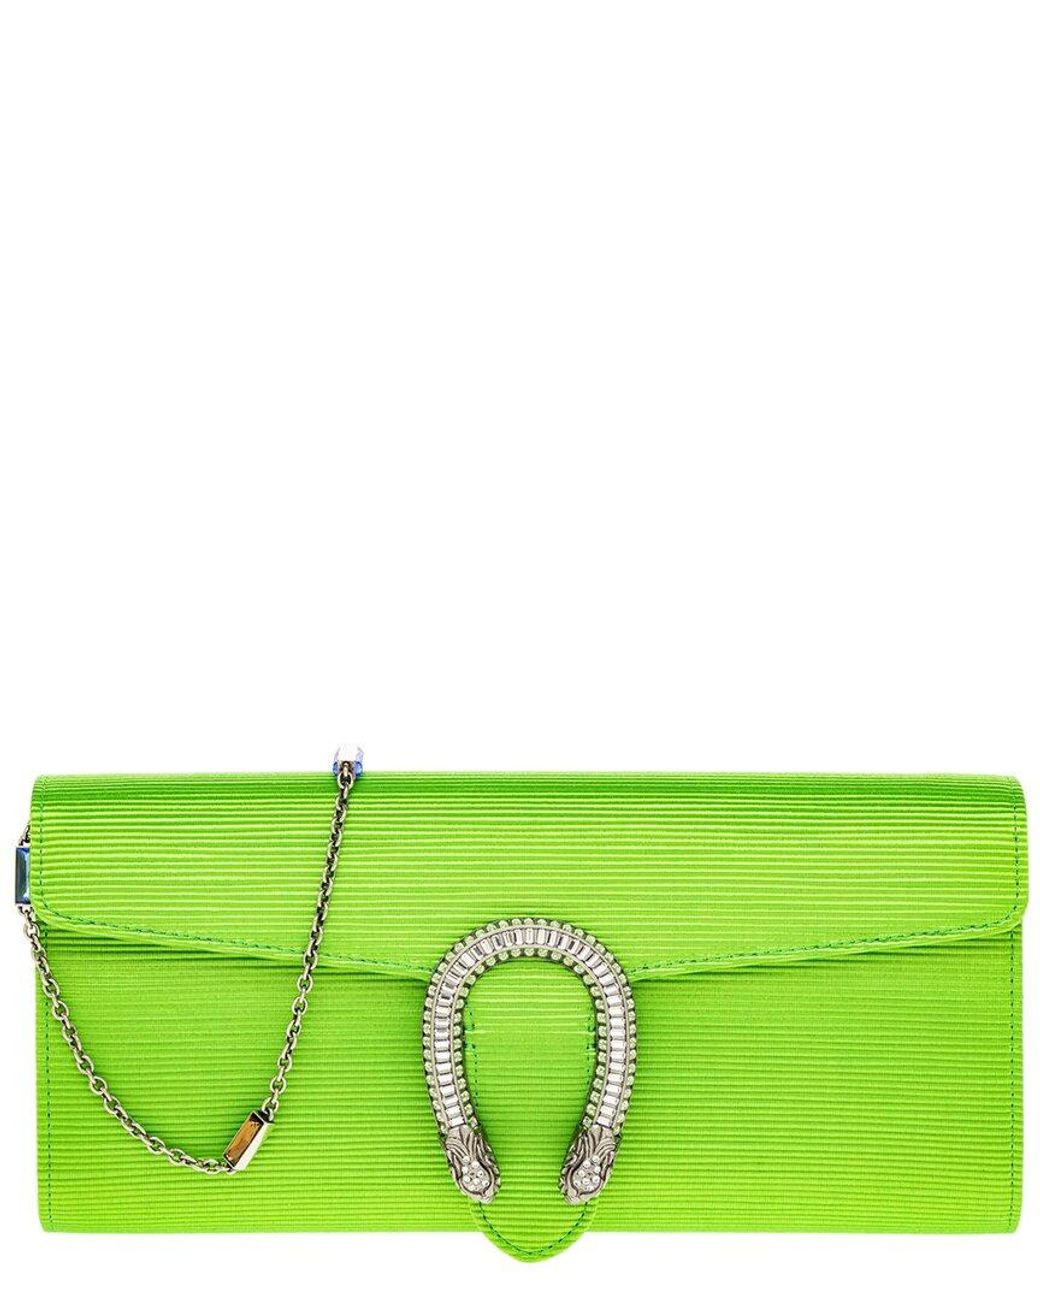 Gucci Dionysus Small Shoulder Bag, Green, Fabric